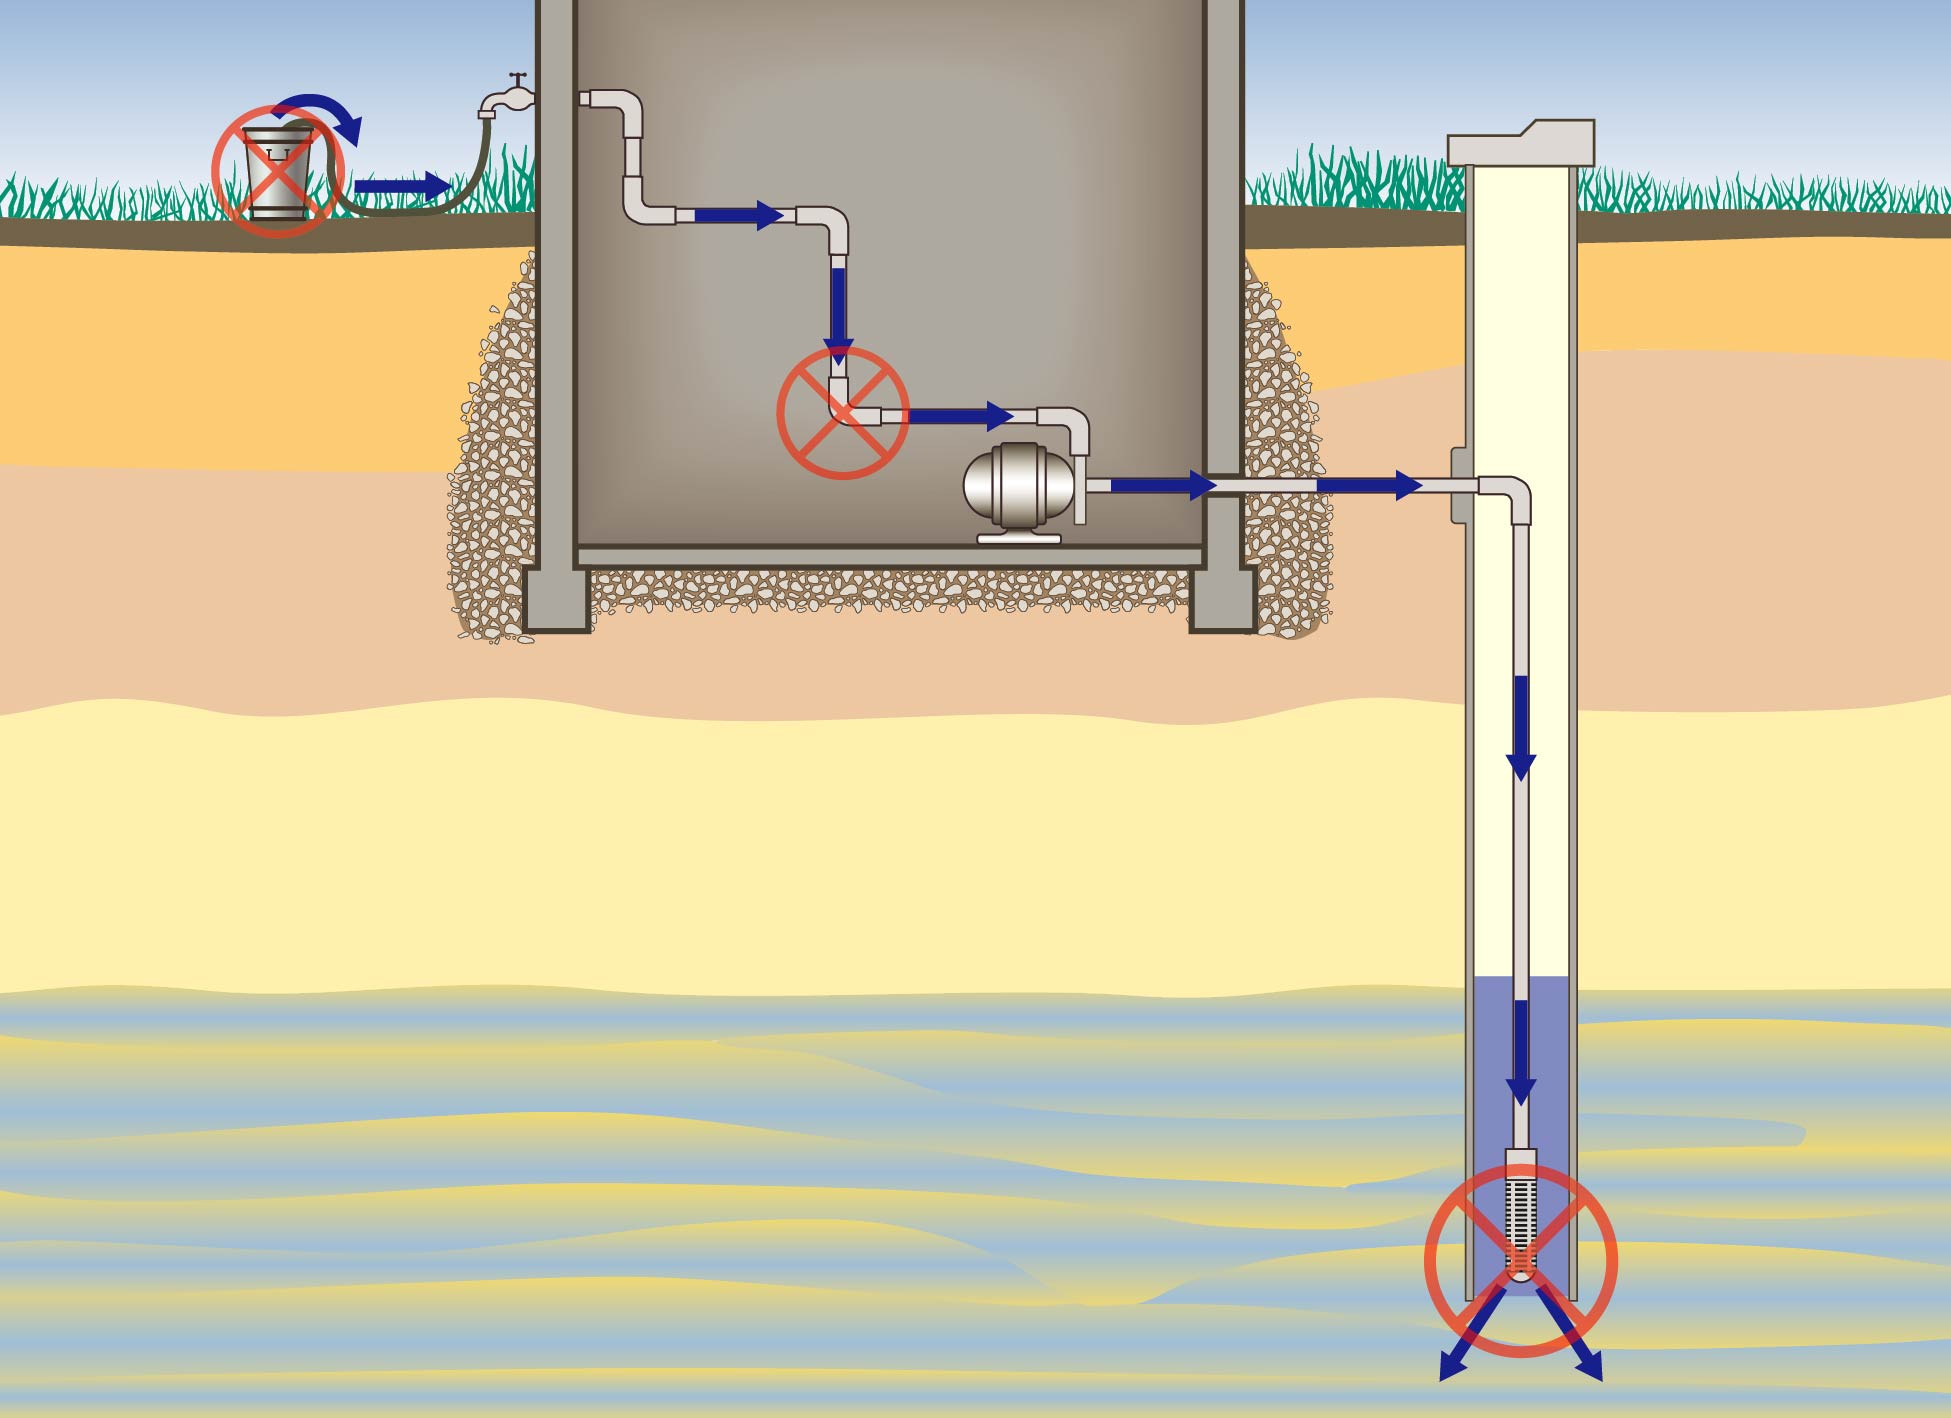 Schéma qui montre une coupe transversale de la plomberie d’une résidence. Le refoulement provenant d’un robinet extérieur peut favoriser l’introduction d’eau contaminée dans le puits privé.